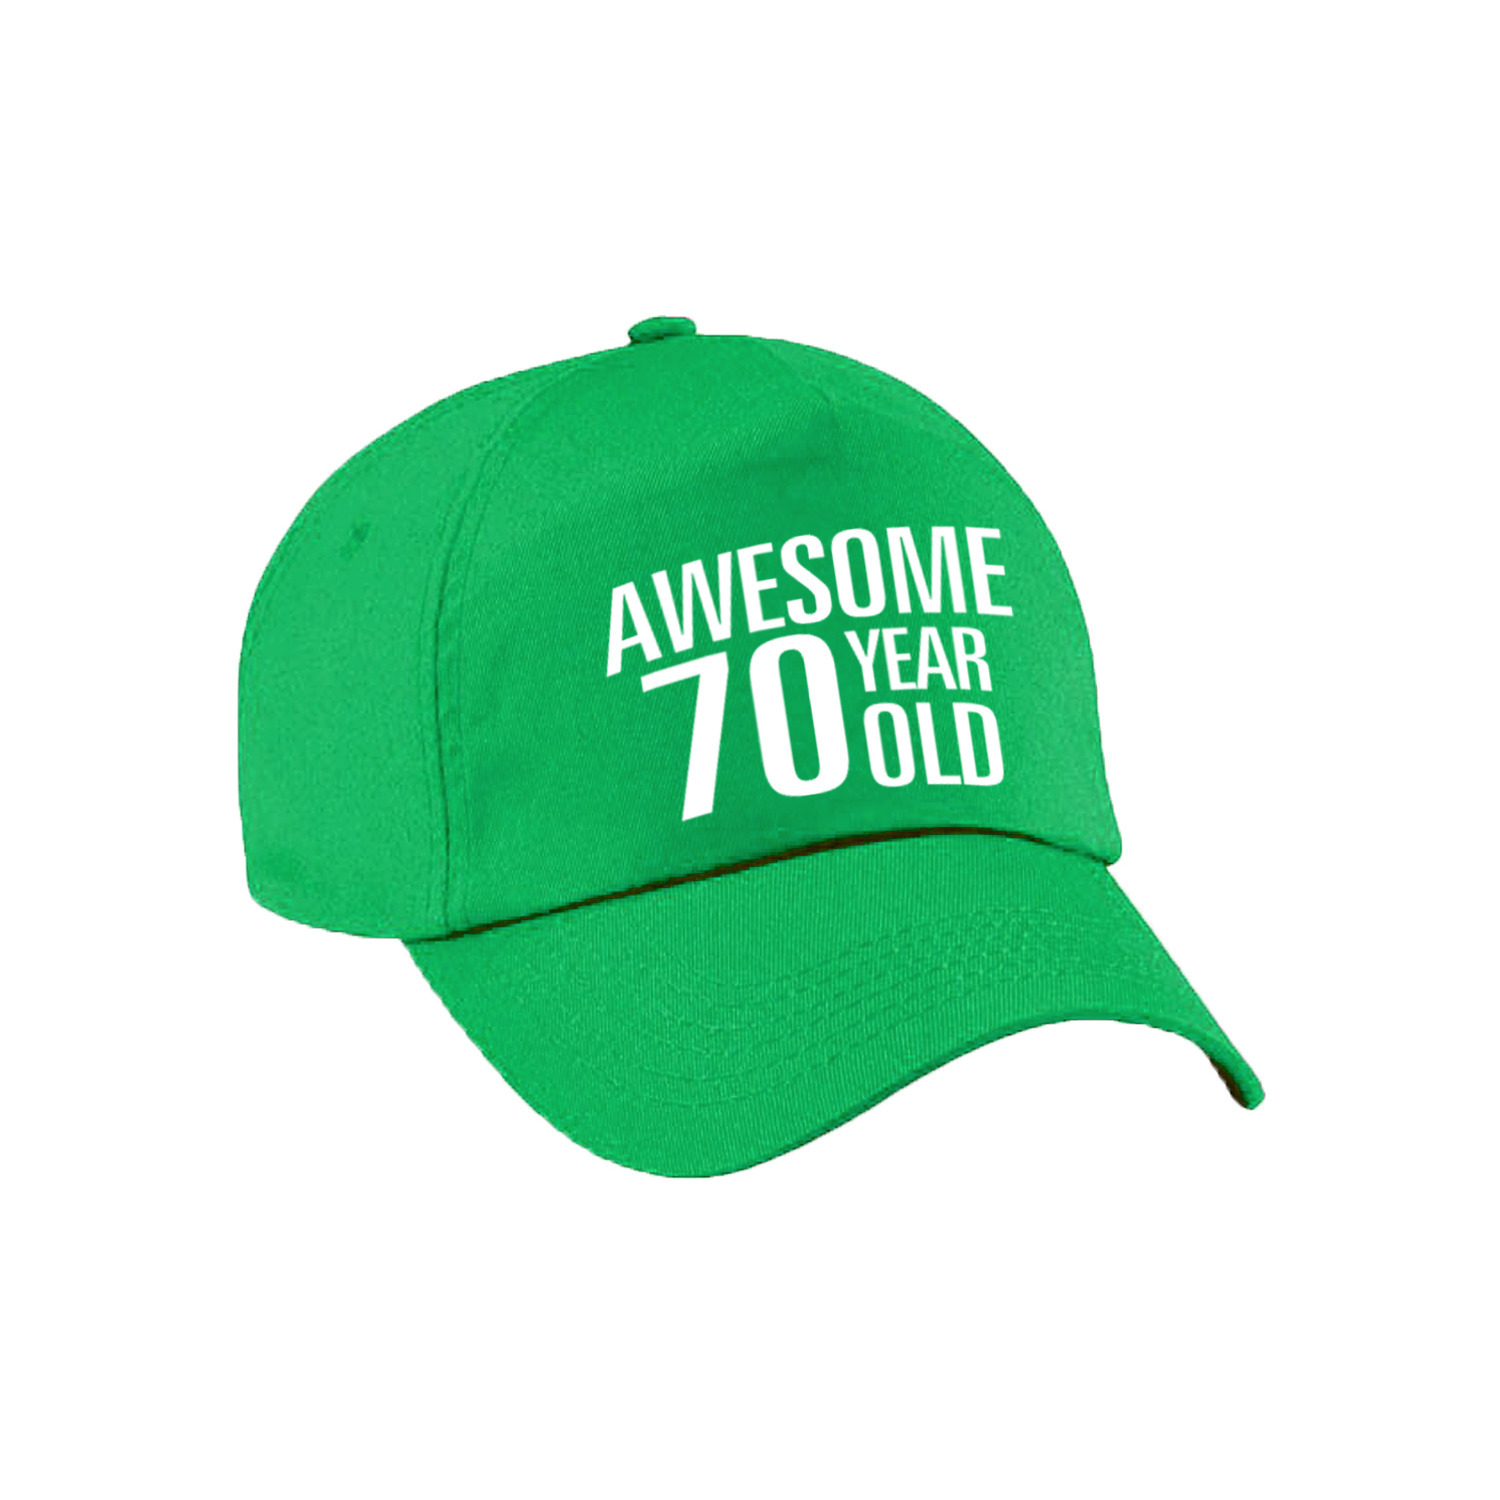 Awesome 70 year old verjaardag pet / cap groen voor dames en heren